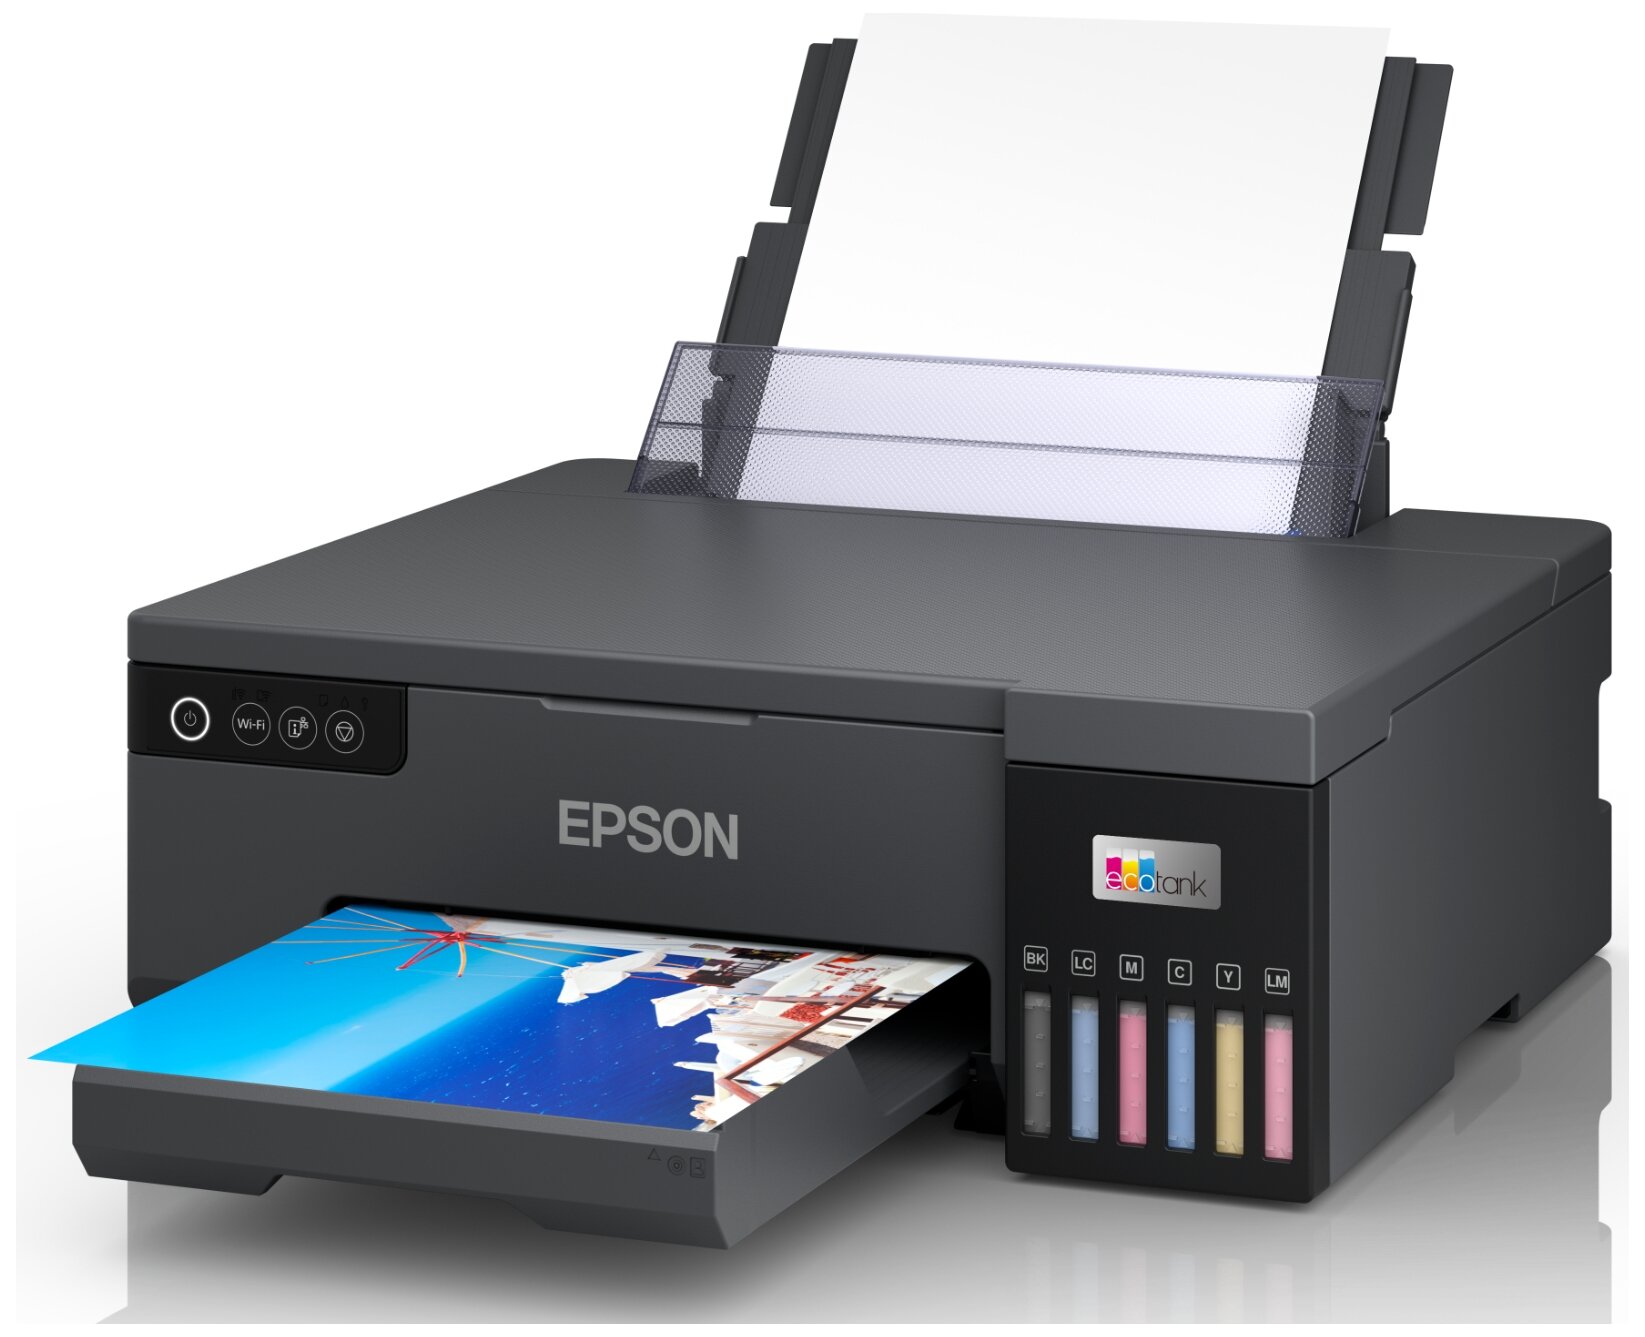 Принтер струйный Epson L8050